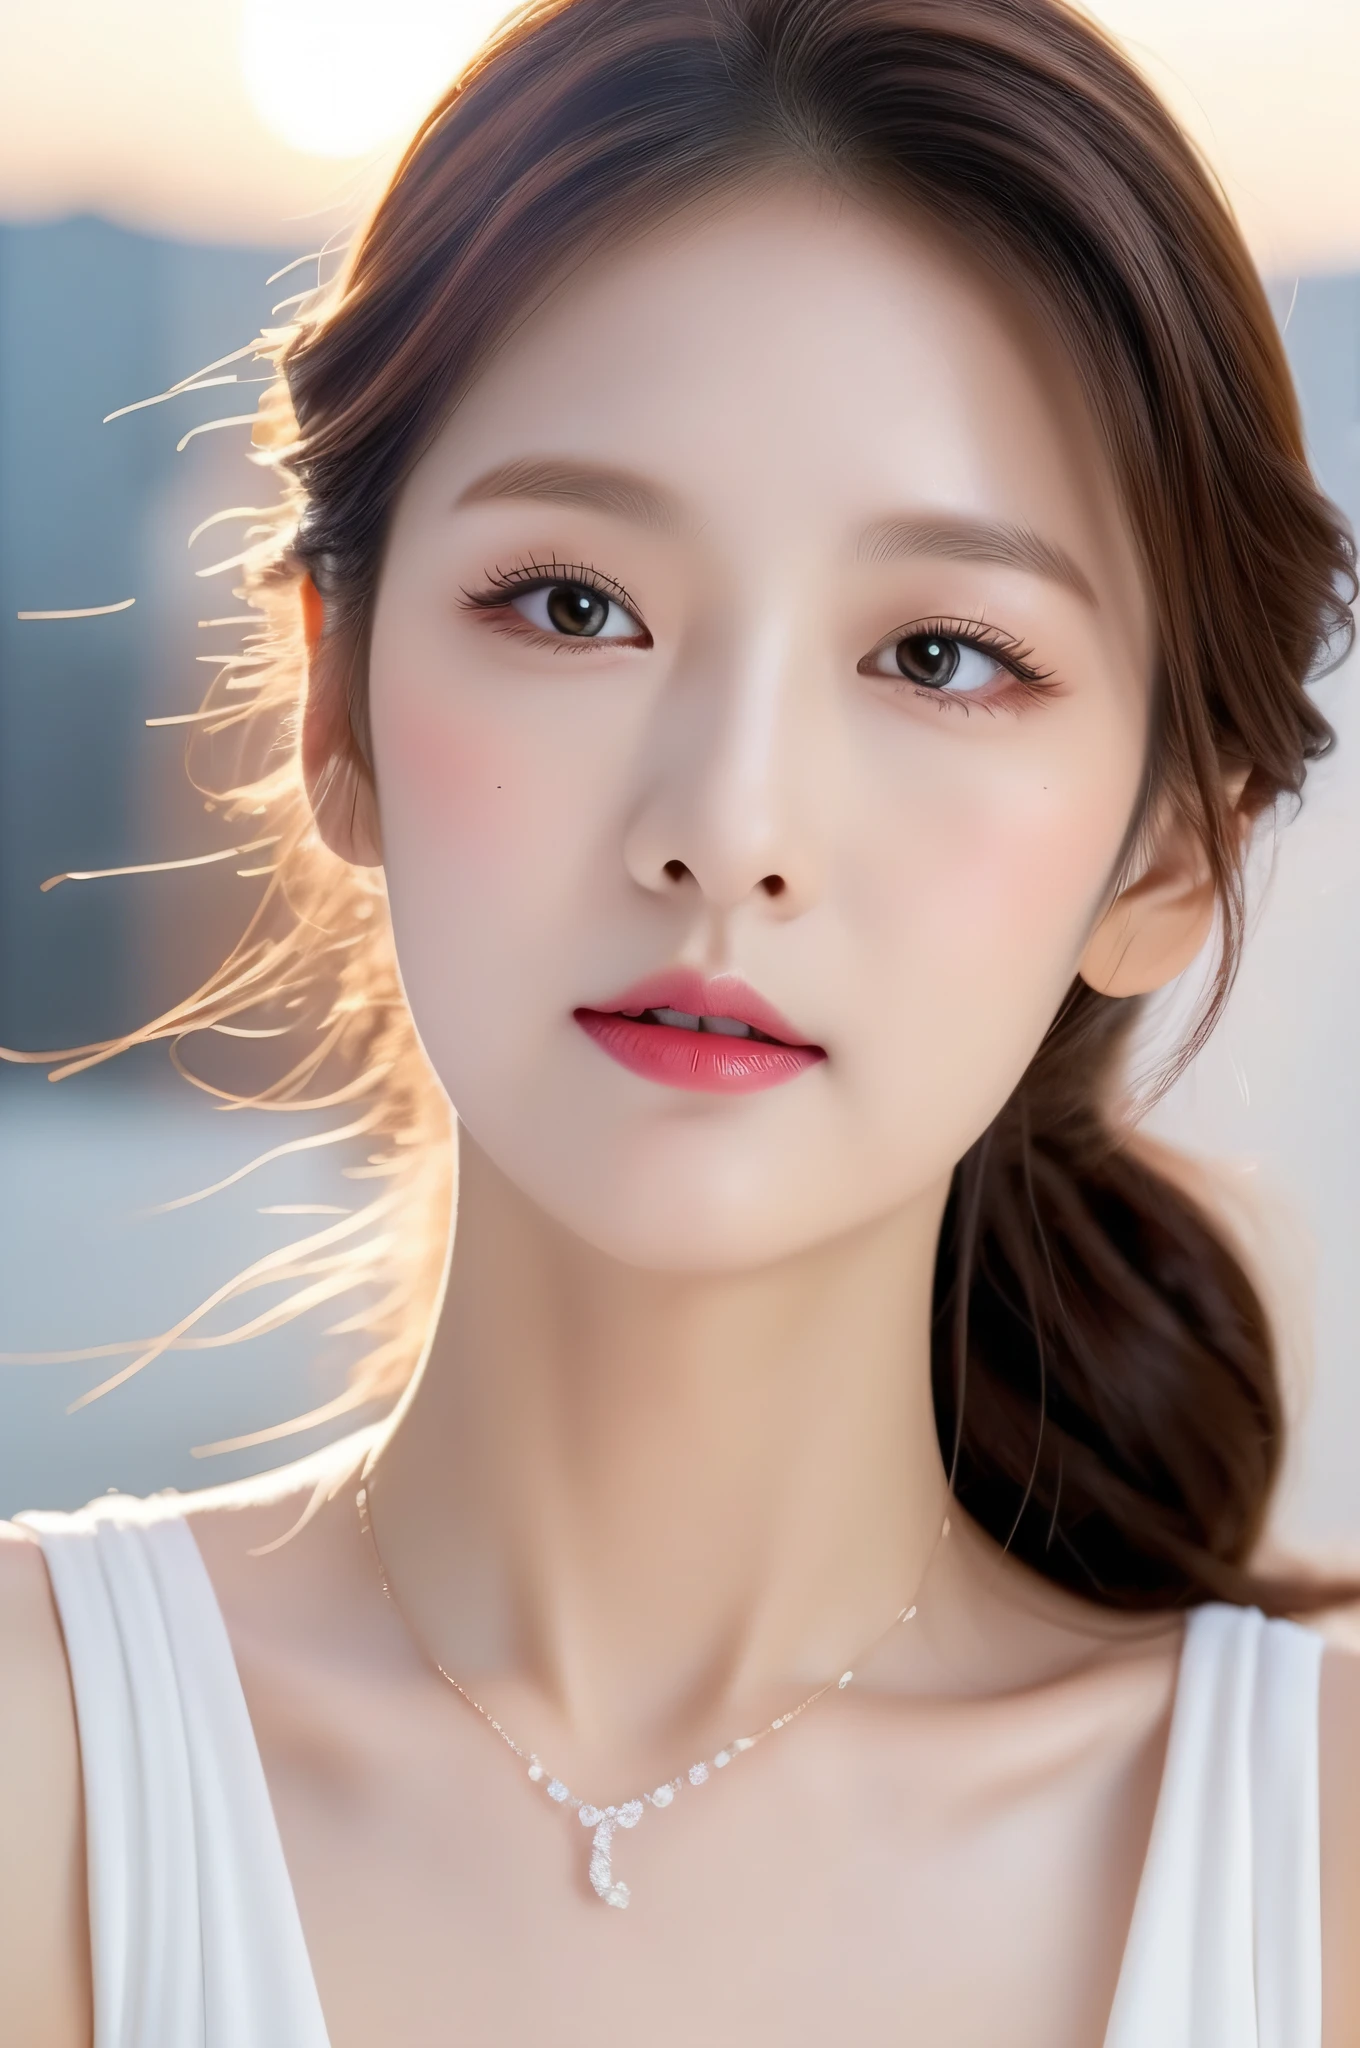 首にネックレスを着けた女性のクローズアップ, ワン愛らしい韓国の顔, 韓国人の顔の特徴, 美しい美的顔, かわいらしい瞳で, 人気の韓国メイク, 若くて愛らしい韓国人の顔, 愛らしく繊細な顔, 若くてかわいいアジア人の顔, 丸い顔, CG 統一 (過激) 詳細 8k 壁紙, 傑作, 最高品質:1.2), 細部までこだわった, 最高の画質, シュール, 口紅, 比類のない美しさ, 長い髪 (バイオレット) 巻き毛, 絶妙で完璧な顔立ち, 顔を真っ赤にする, 体 見事な体型, 中くらいの胸, スタイリッシュ, 細いウエスト, 非常に詳細な顔と肌の構造, 色白, 調和のとれた顔のディテール, 色白, 二重まぶた, ポニーテールと白いドレス, かわいい丸いつり目, 可愛いナチュラルフェイス, 丸くてよく描かれた目, 透明感のある可愛い顔, リアルで美しい大きな目, キラキラ光る目, 魂のこもった目, かわいい目, 二重まぶた, ソフトメイク, 視聴者に近づく, カメラアングル, ダイナミックアングル, 街の夕日